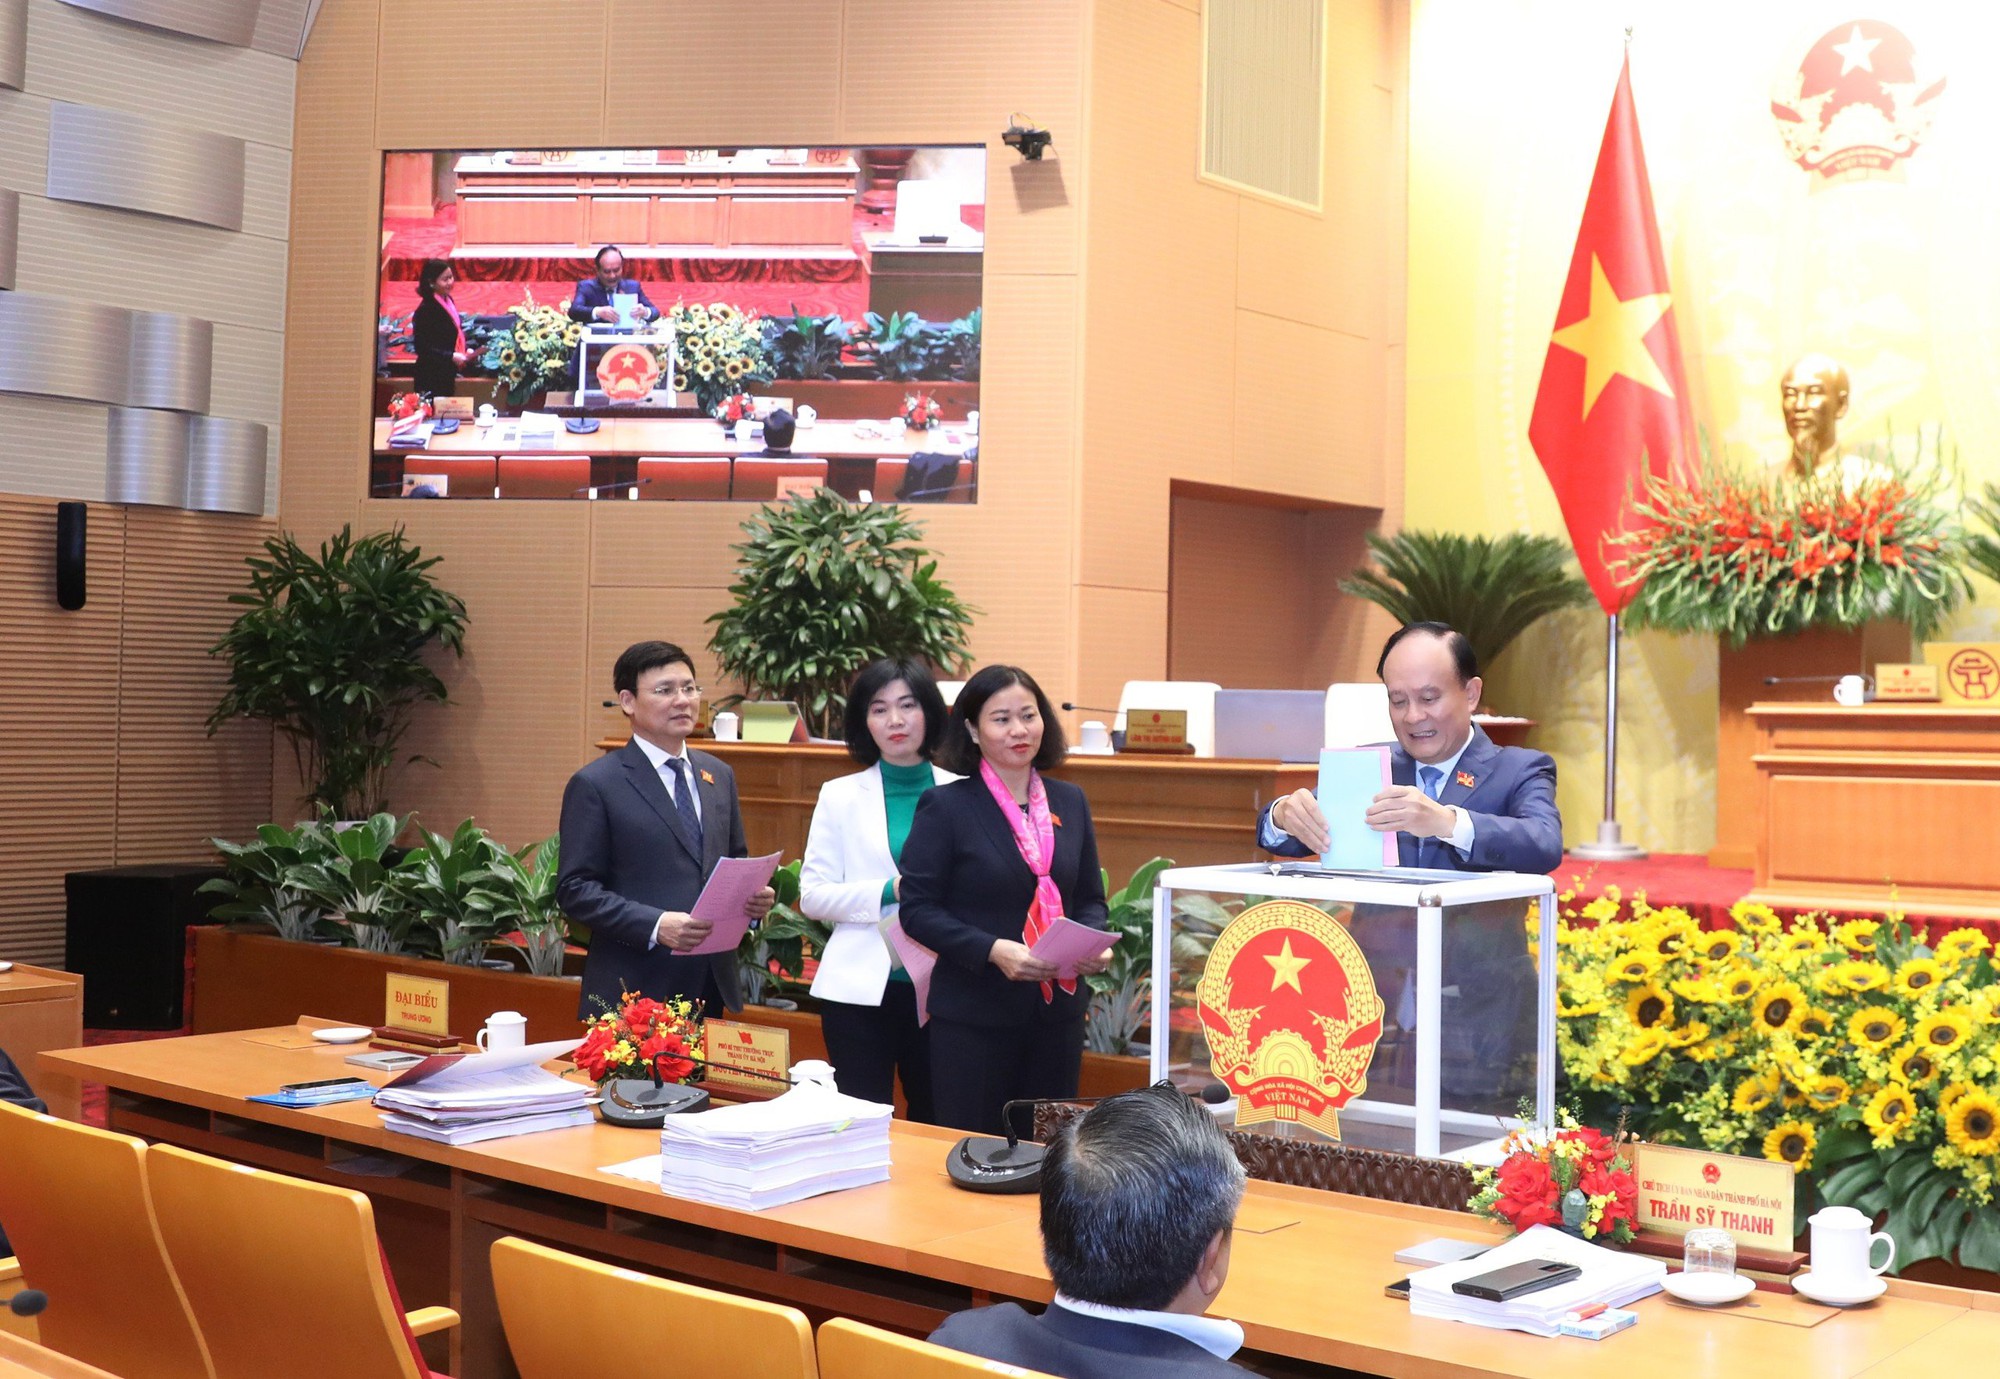 Hà Nội công bố phiếu tín nhiệm: Chủ tịch Hà Nội đạt trên 85% phiếu tín nhiệm cao - Ảnh 1.